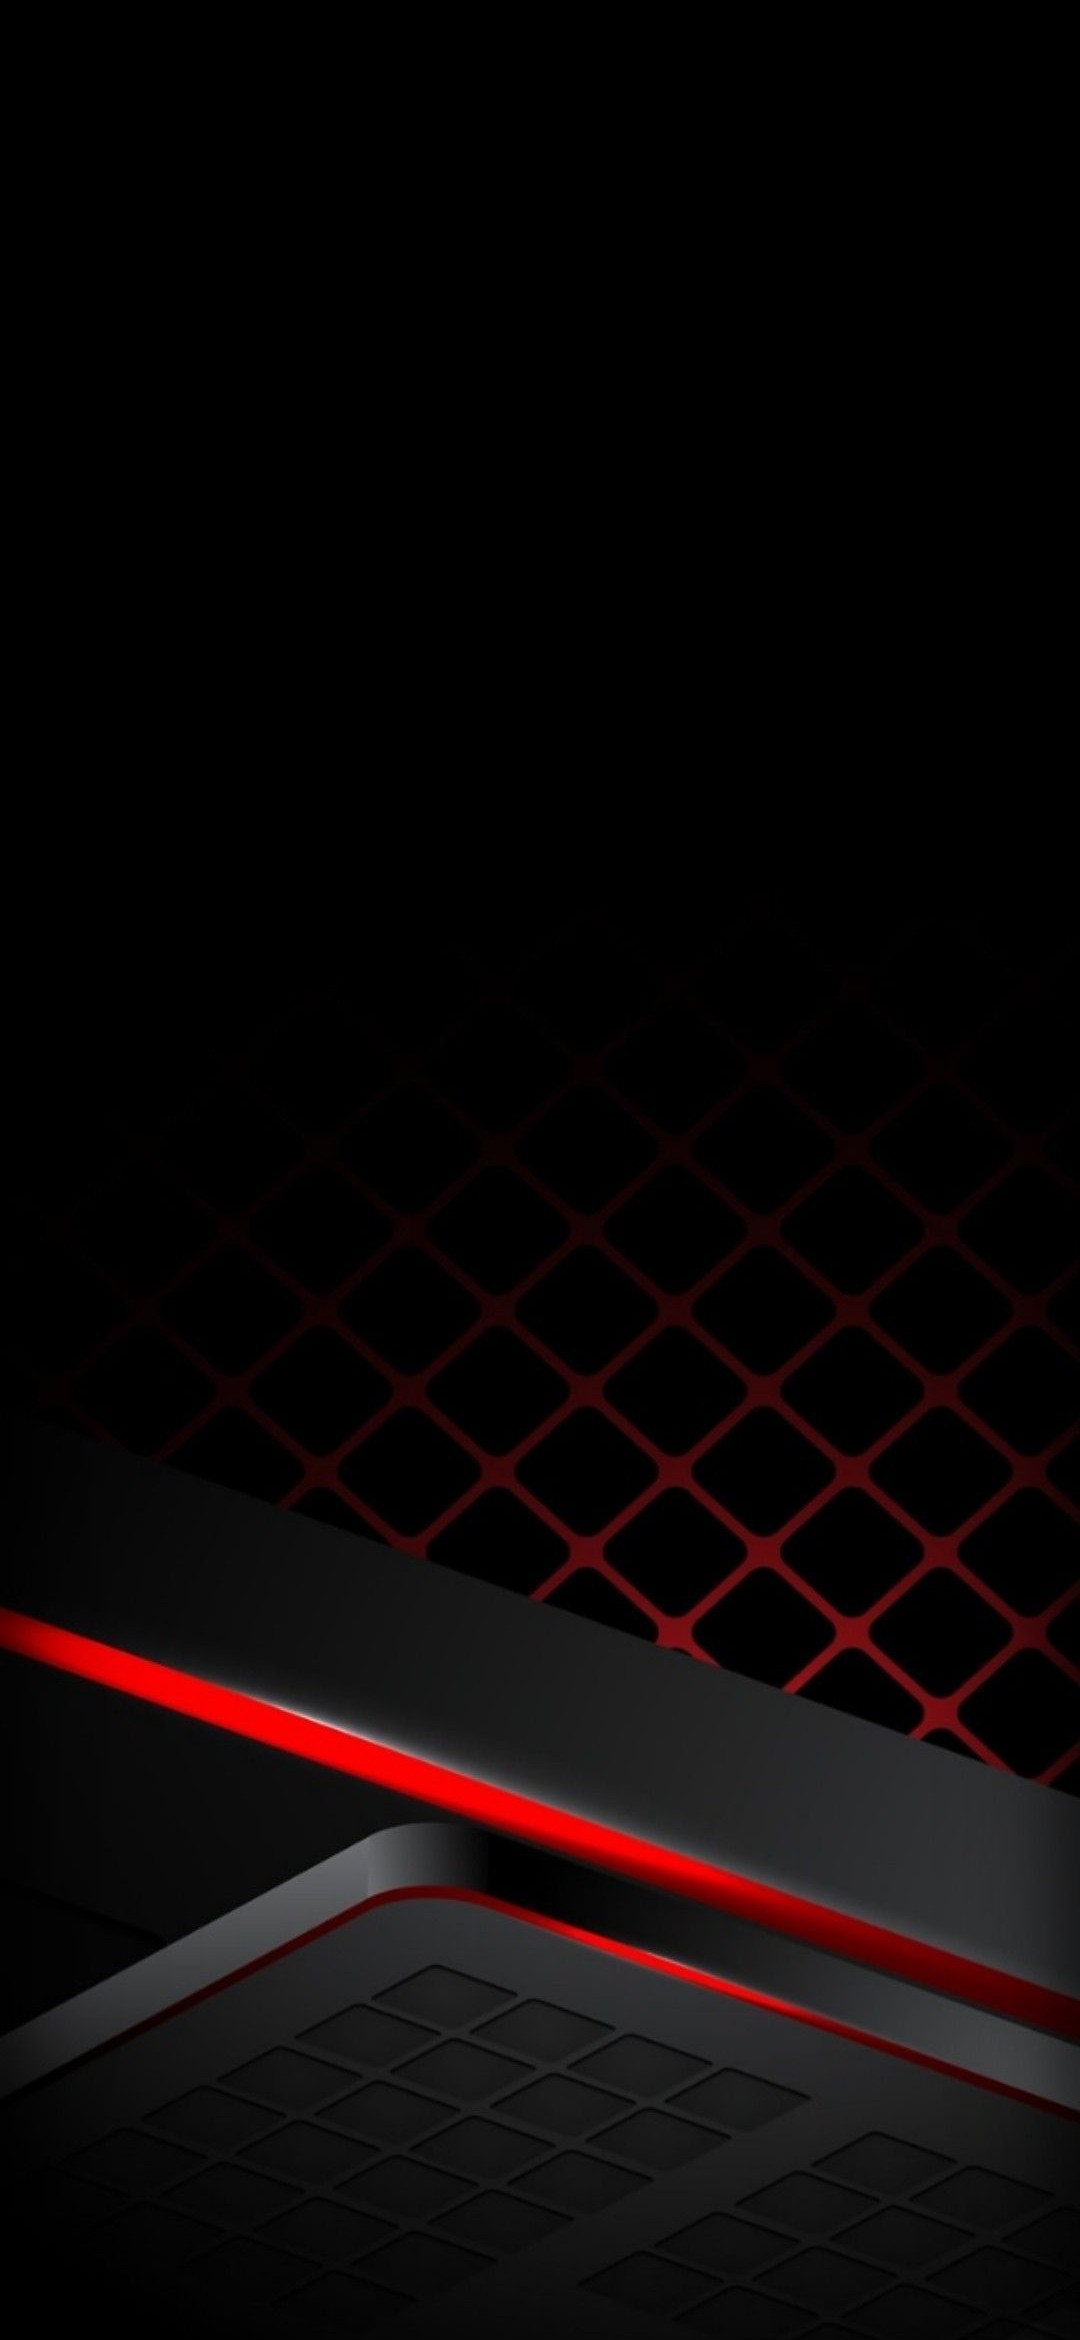 かっこいい黒と赤のテクスチャー Galaxy A30 Android スマホ壁紙 待ち受け スマラン